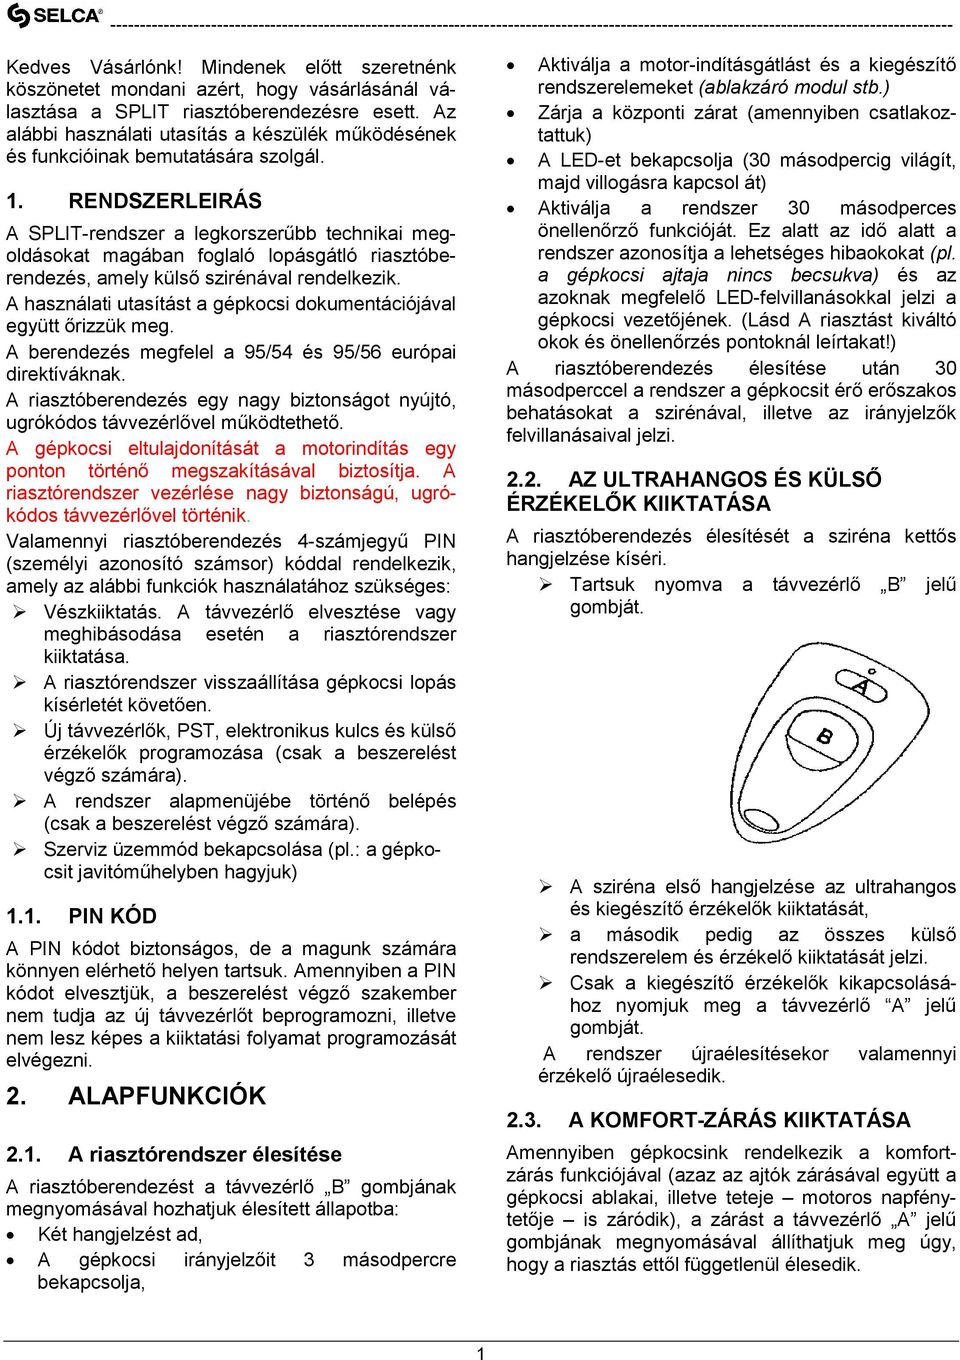 SPLIT MODUL BIZTONSÁGI RENDSZER HASZNÁLATI ÚTMUTATÓ - PDF Ingyenes letöltés